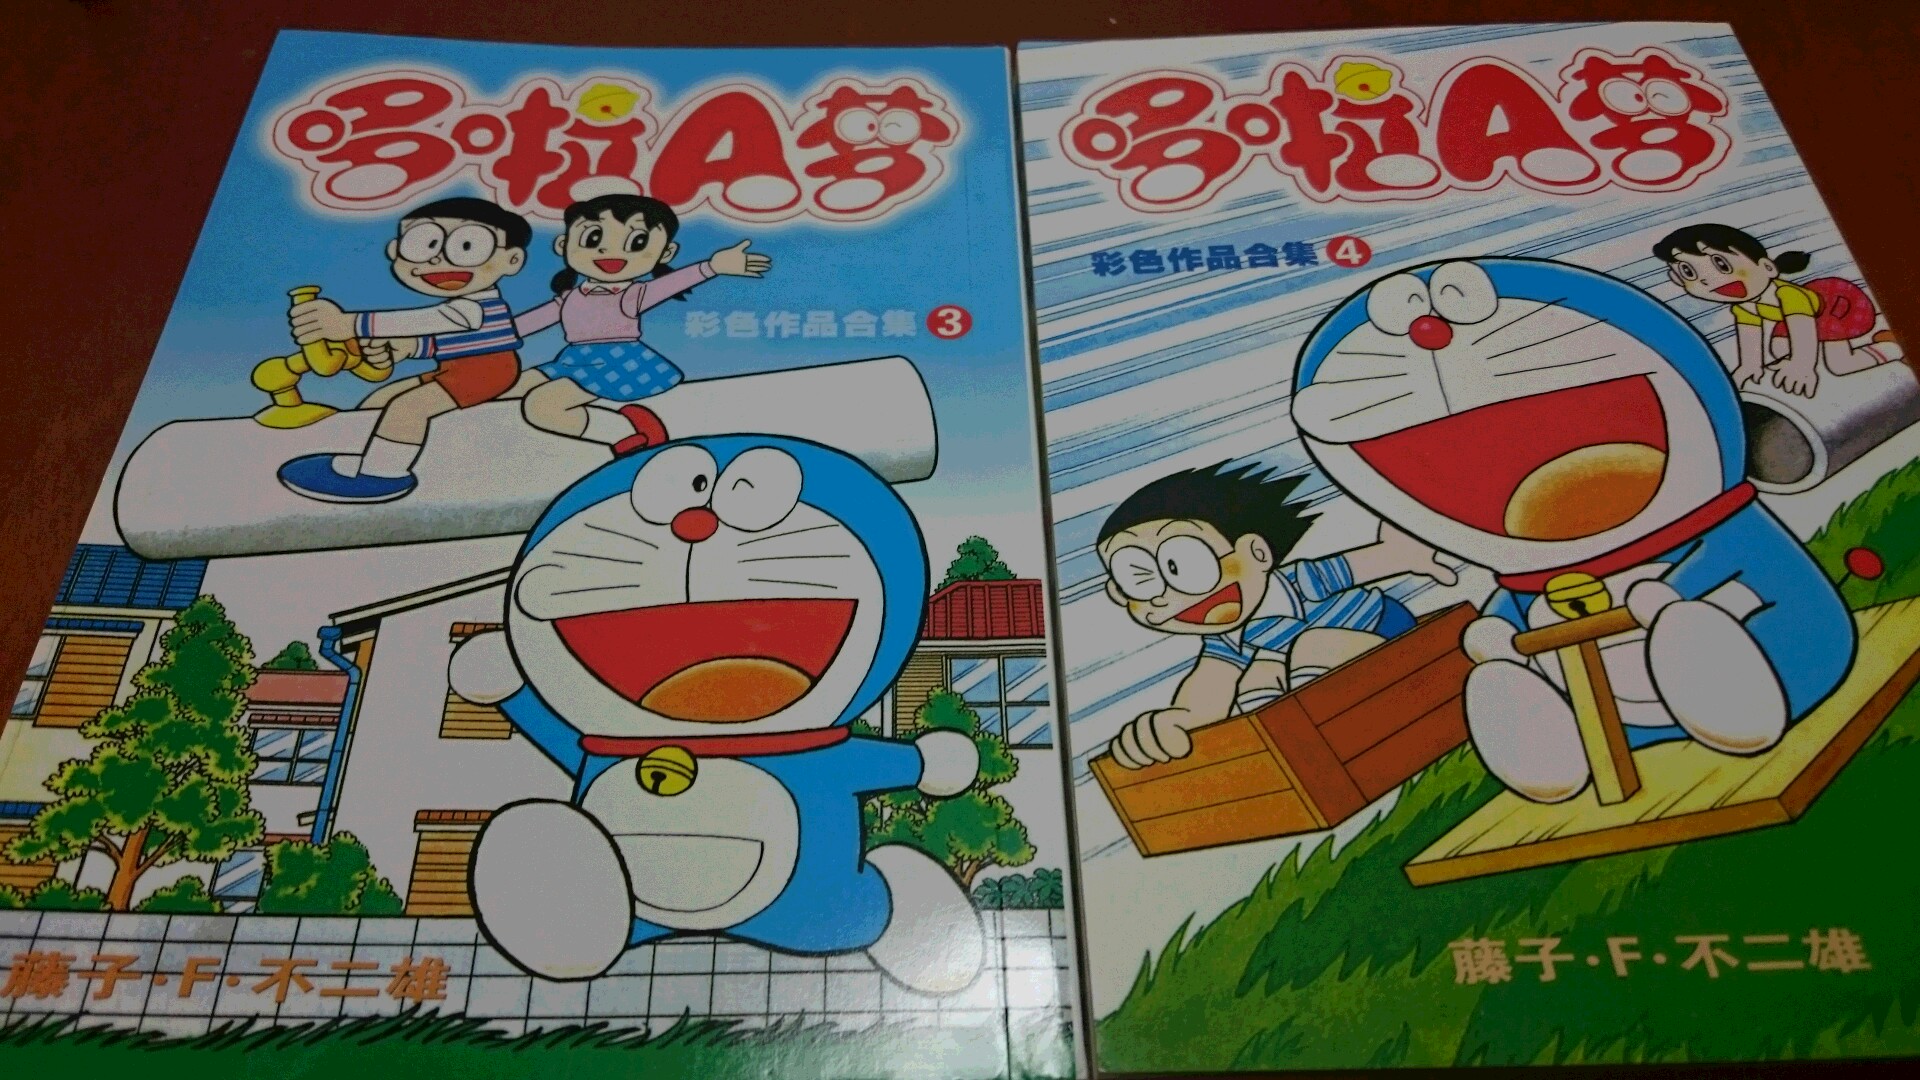 ドラえもん漫画 哆啦a梦 は中国語勉強におすすめ 中国語 中級の壁突破を目指して